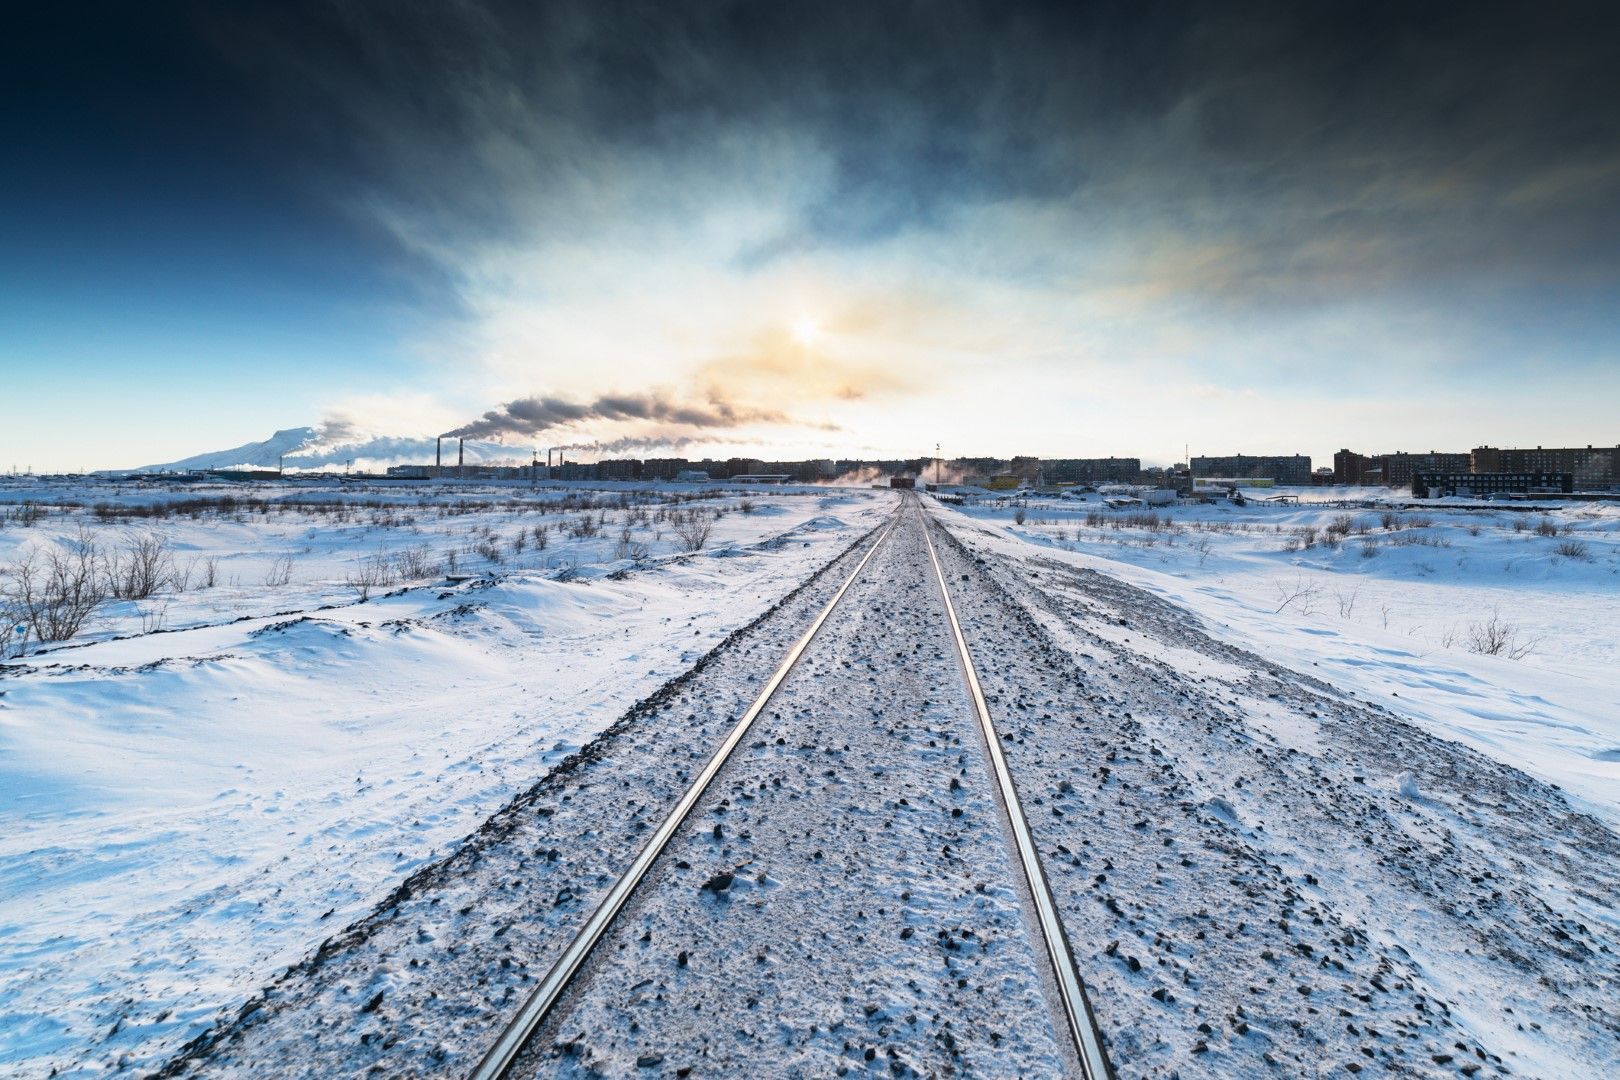 ЖП линия в Норилск, построена върху вечно замръзнала земя